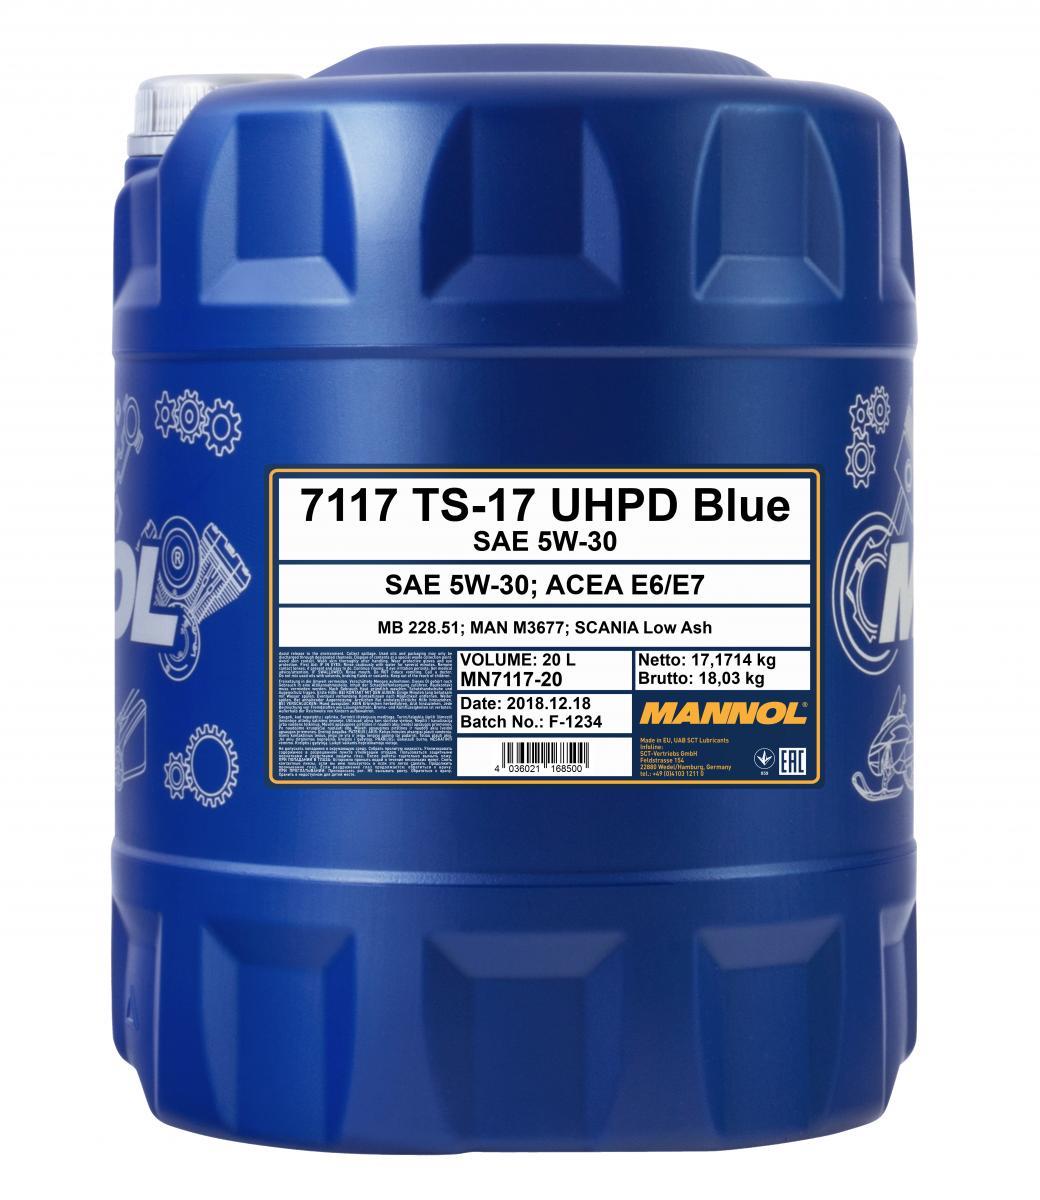 Mannol - 7117 TS-17 BLUE UHPD 5W-30